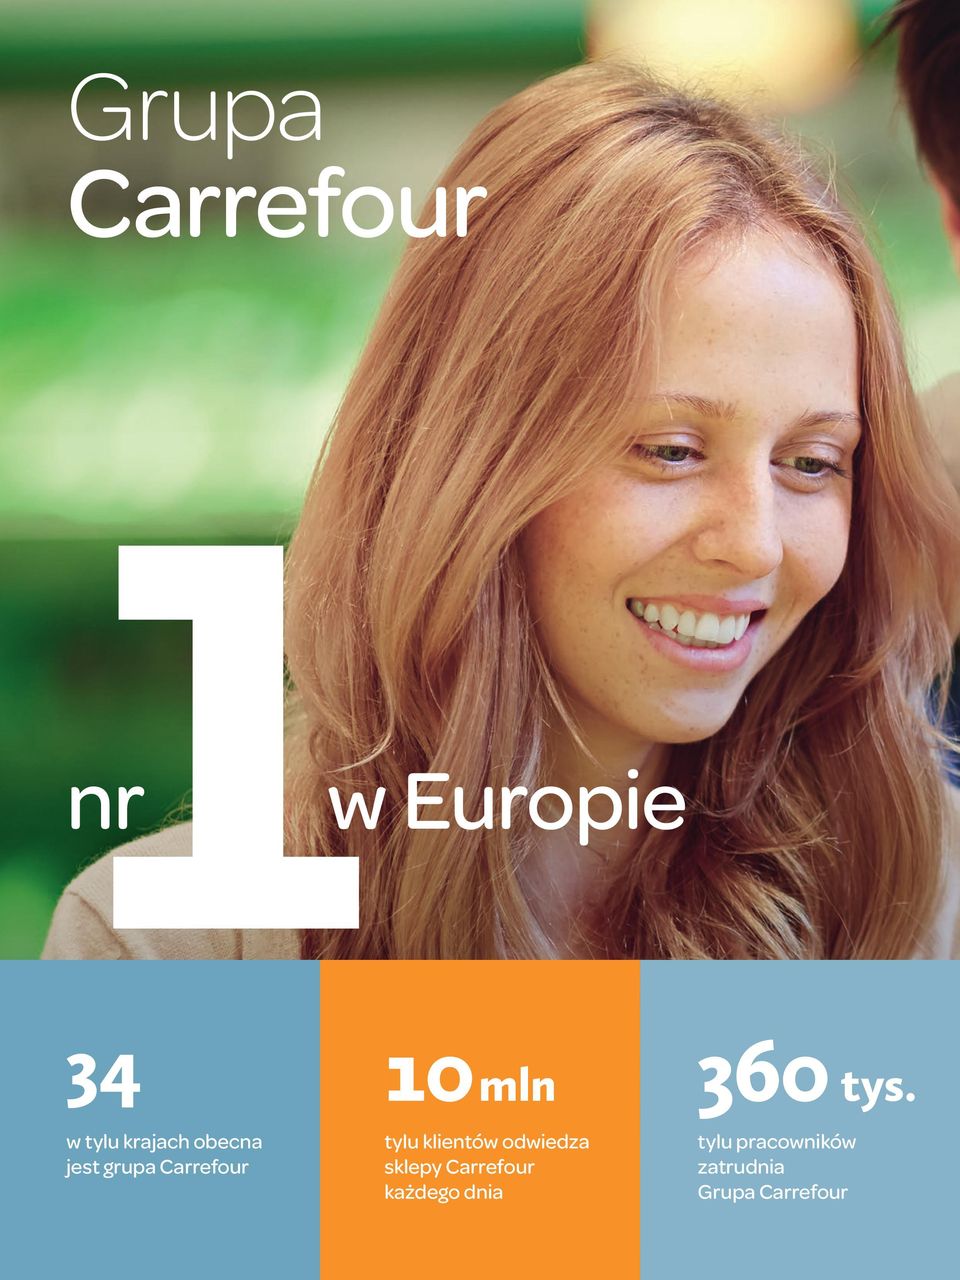 10mln tylu klientów odwiedza sklepy Carrefour